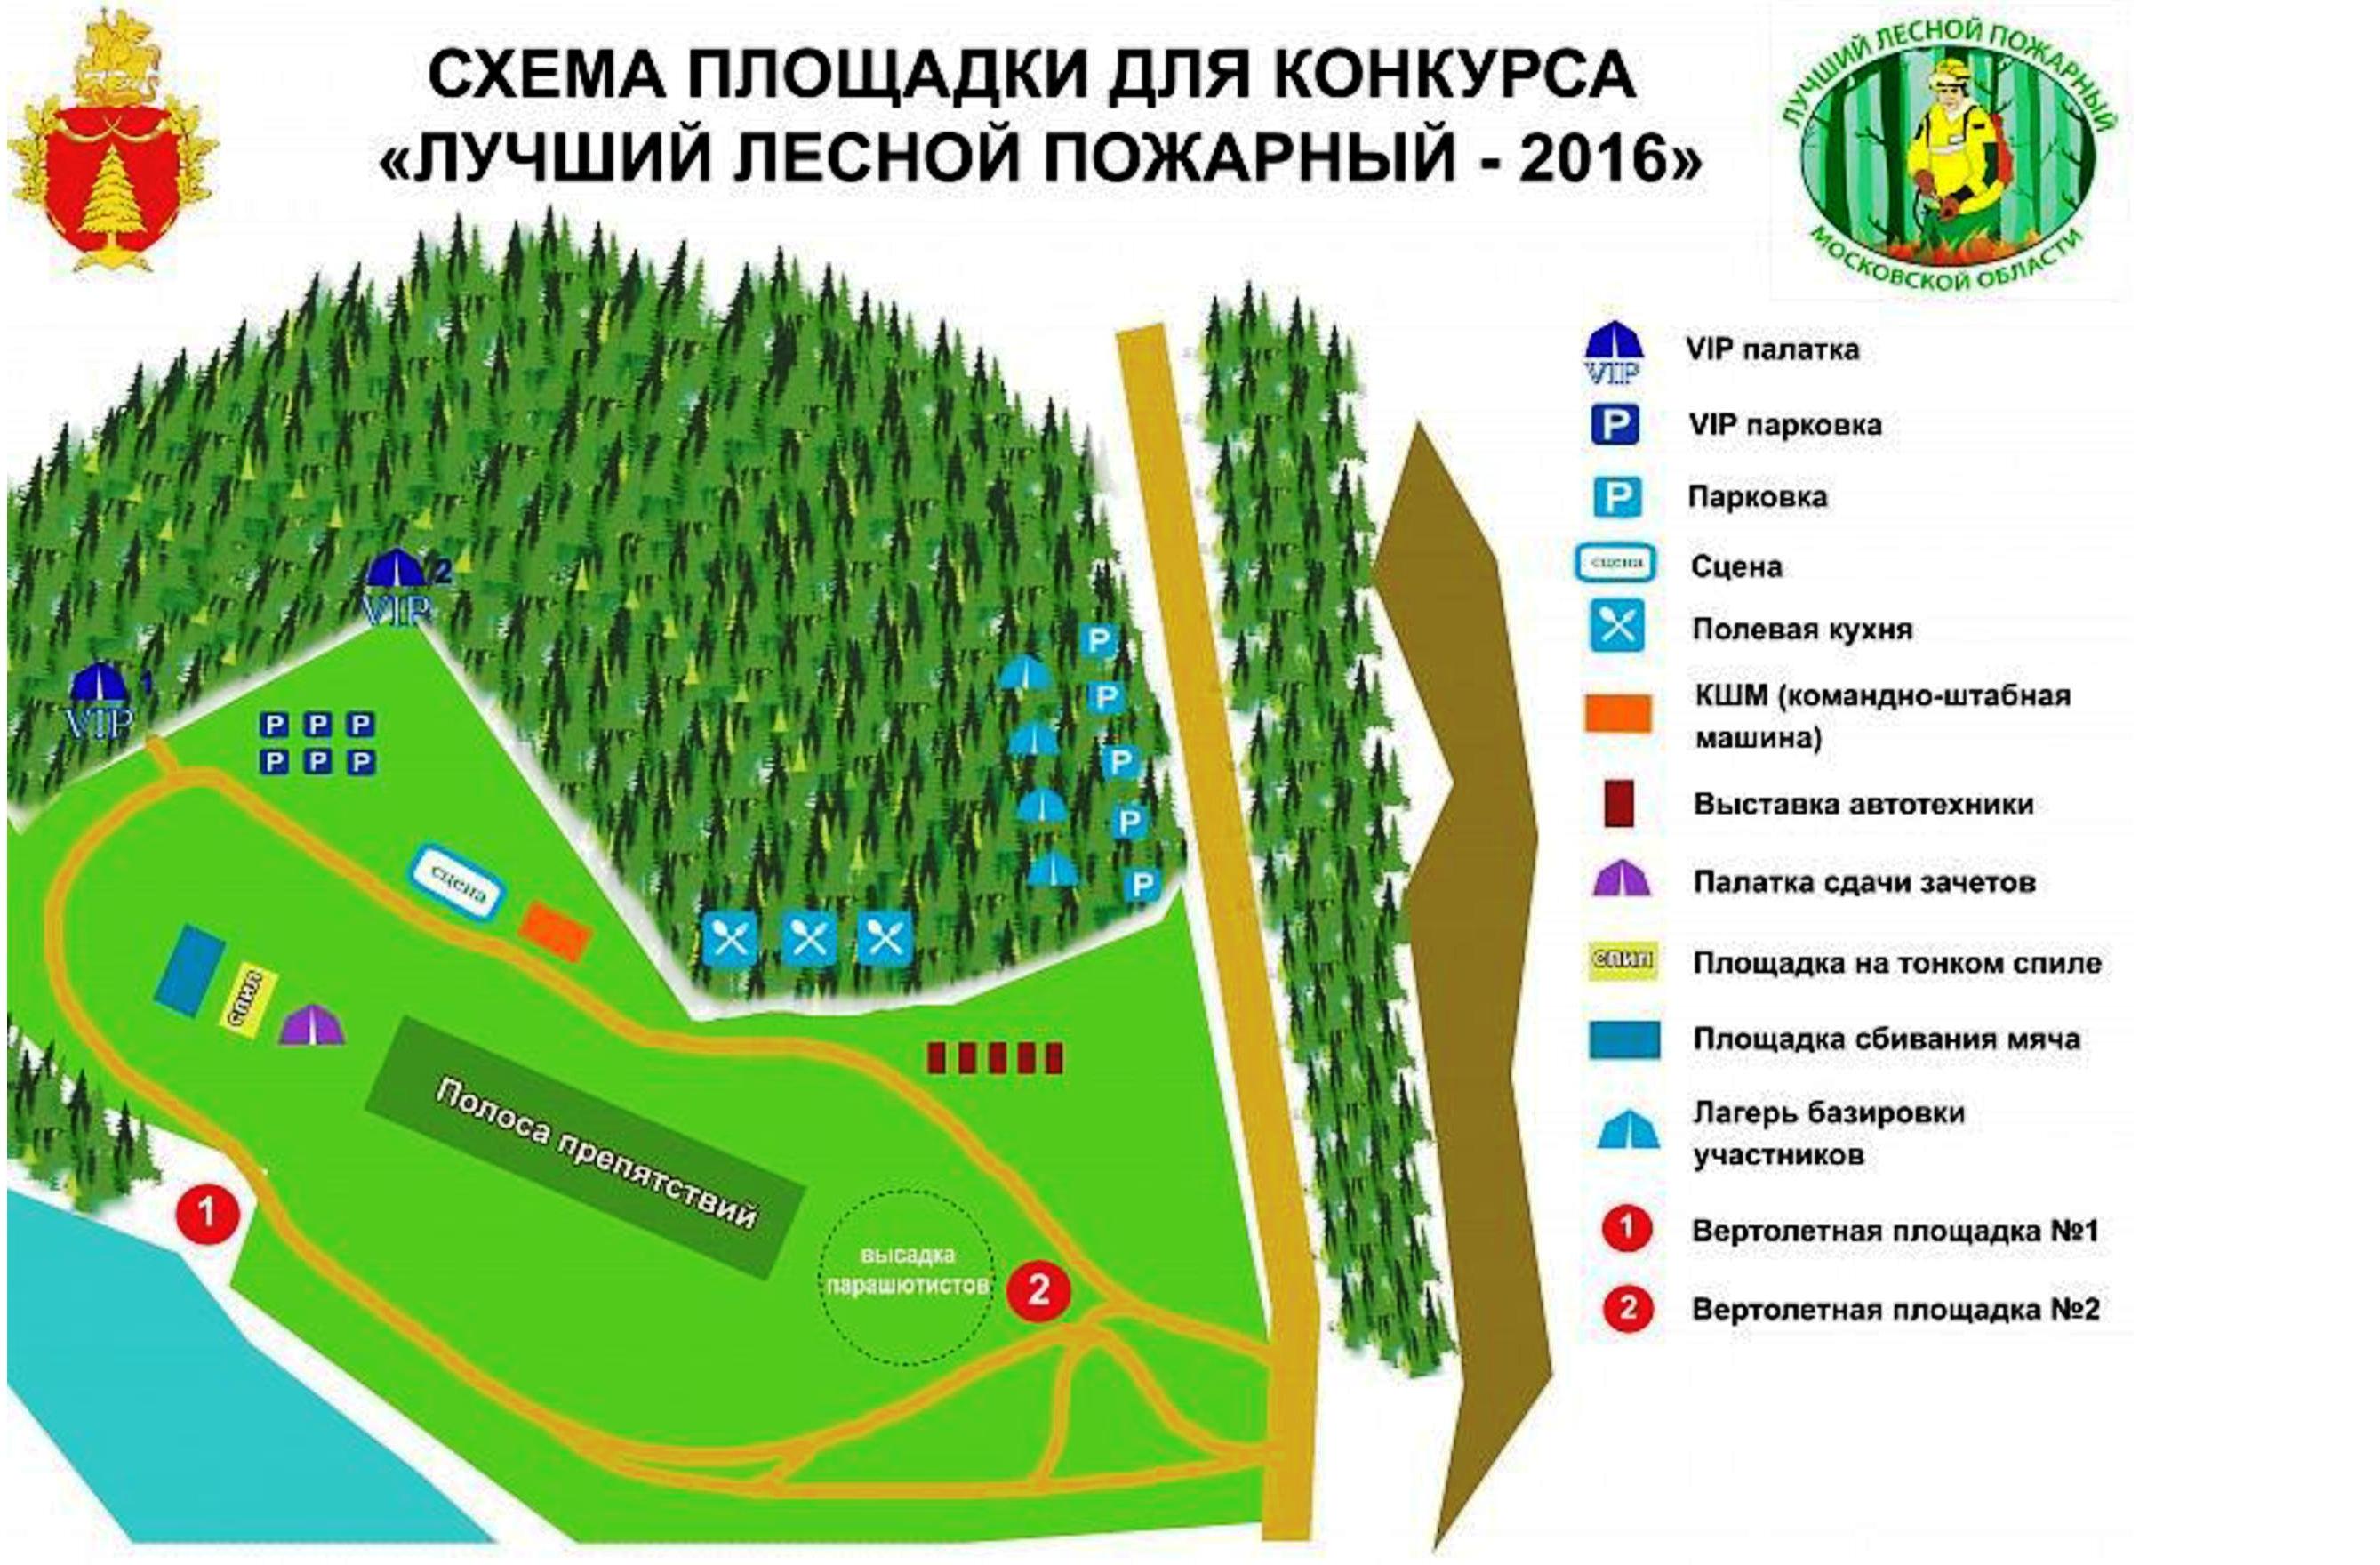  Комитет лесного хозяйства Московской области проведет конкурс - фото 2